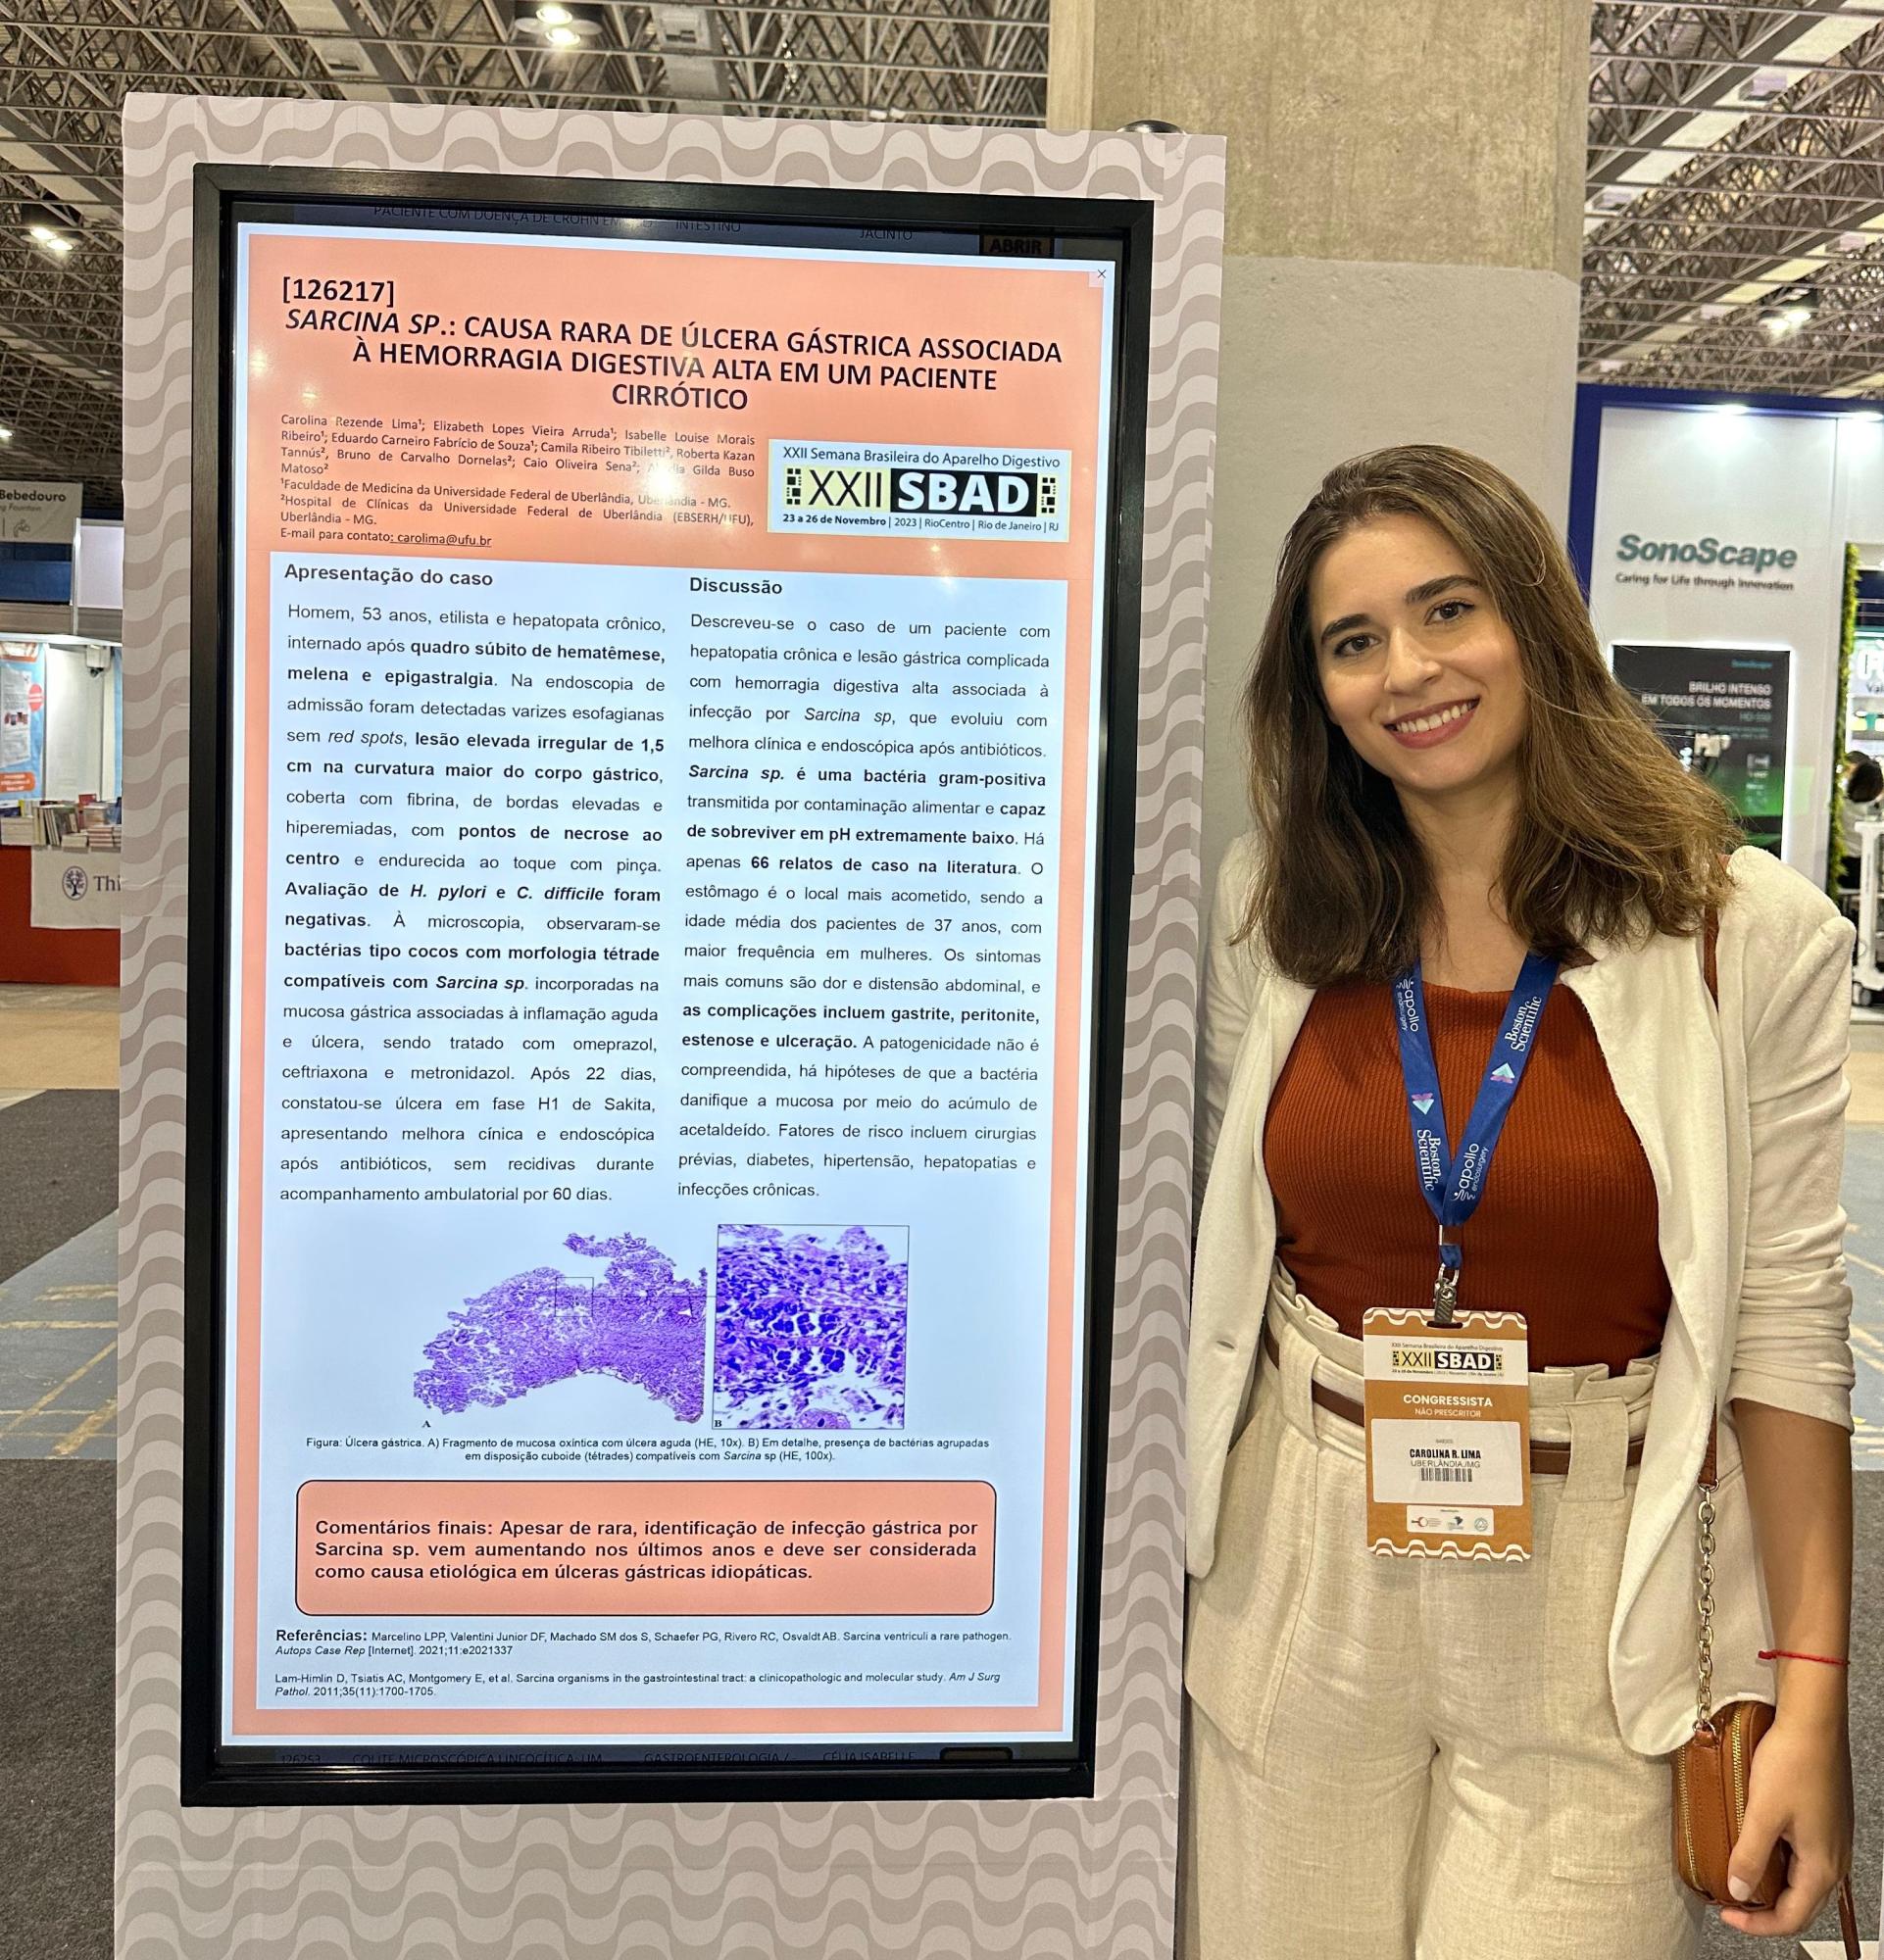 Carolina Lima apresentou o trabalho como autora principal e recebeu o prêmio de 2º lugar na categoria “Prêmio Ligas da Federação Brasileira de Gastroenterologia” (Foto: Arquivo pessoal)